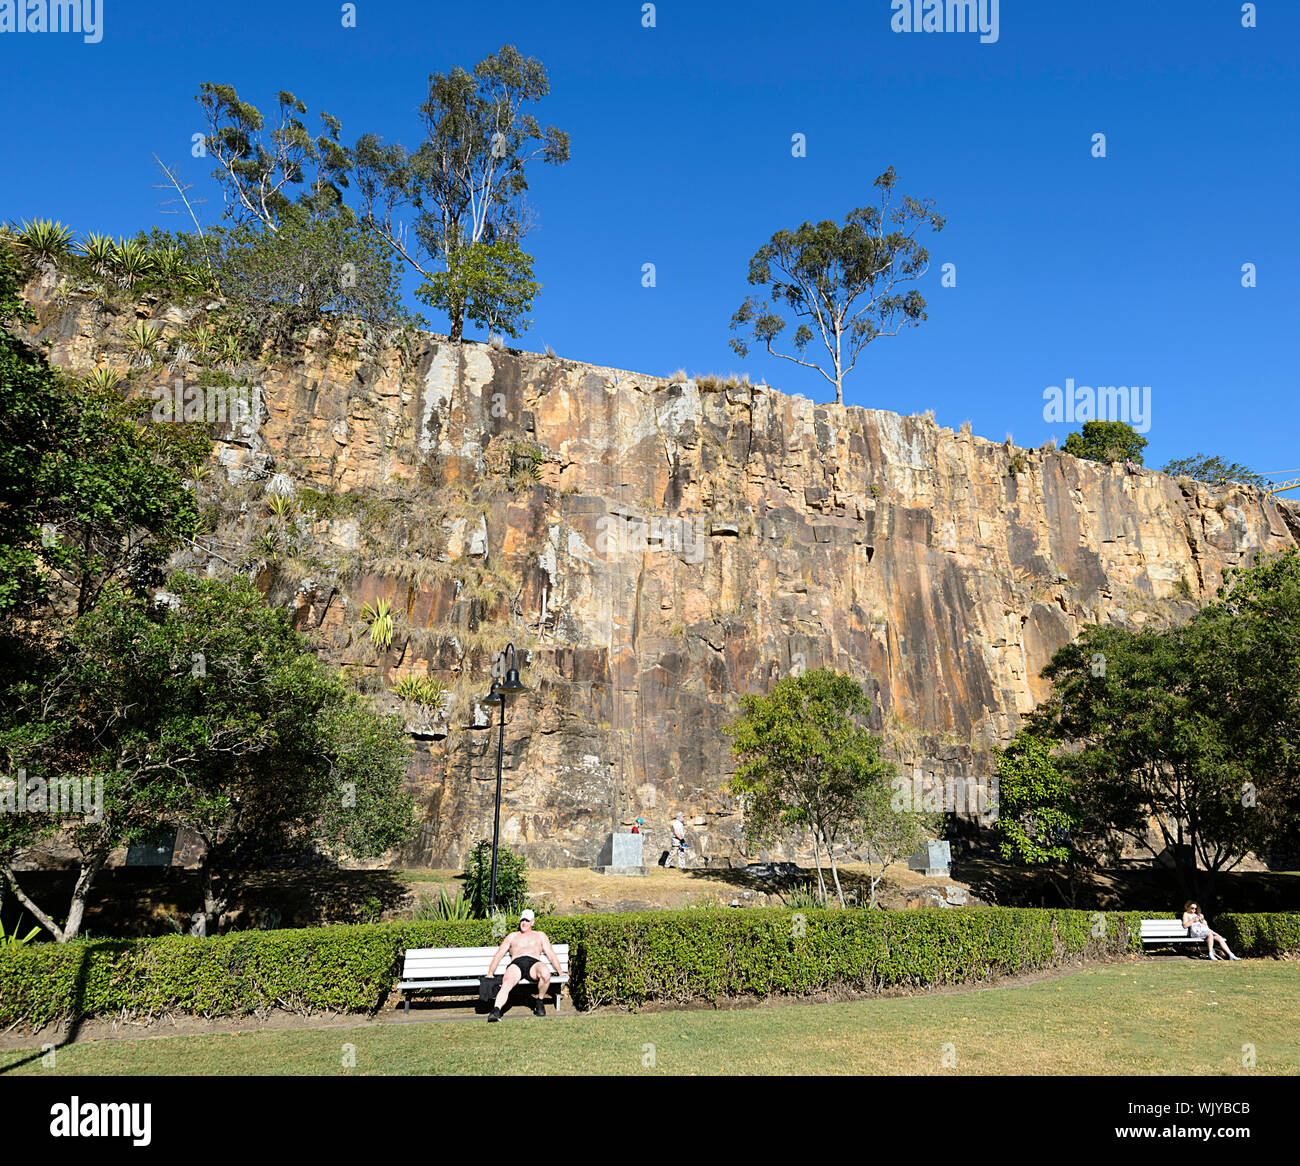 Zwei Personen beim Sonnenbaden auf einer Bank in einem Park am Kangaroo Point Cliffs, Brisbane, Queensland, Queensland, Australien Stockfoto